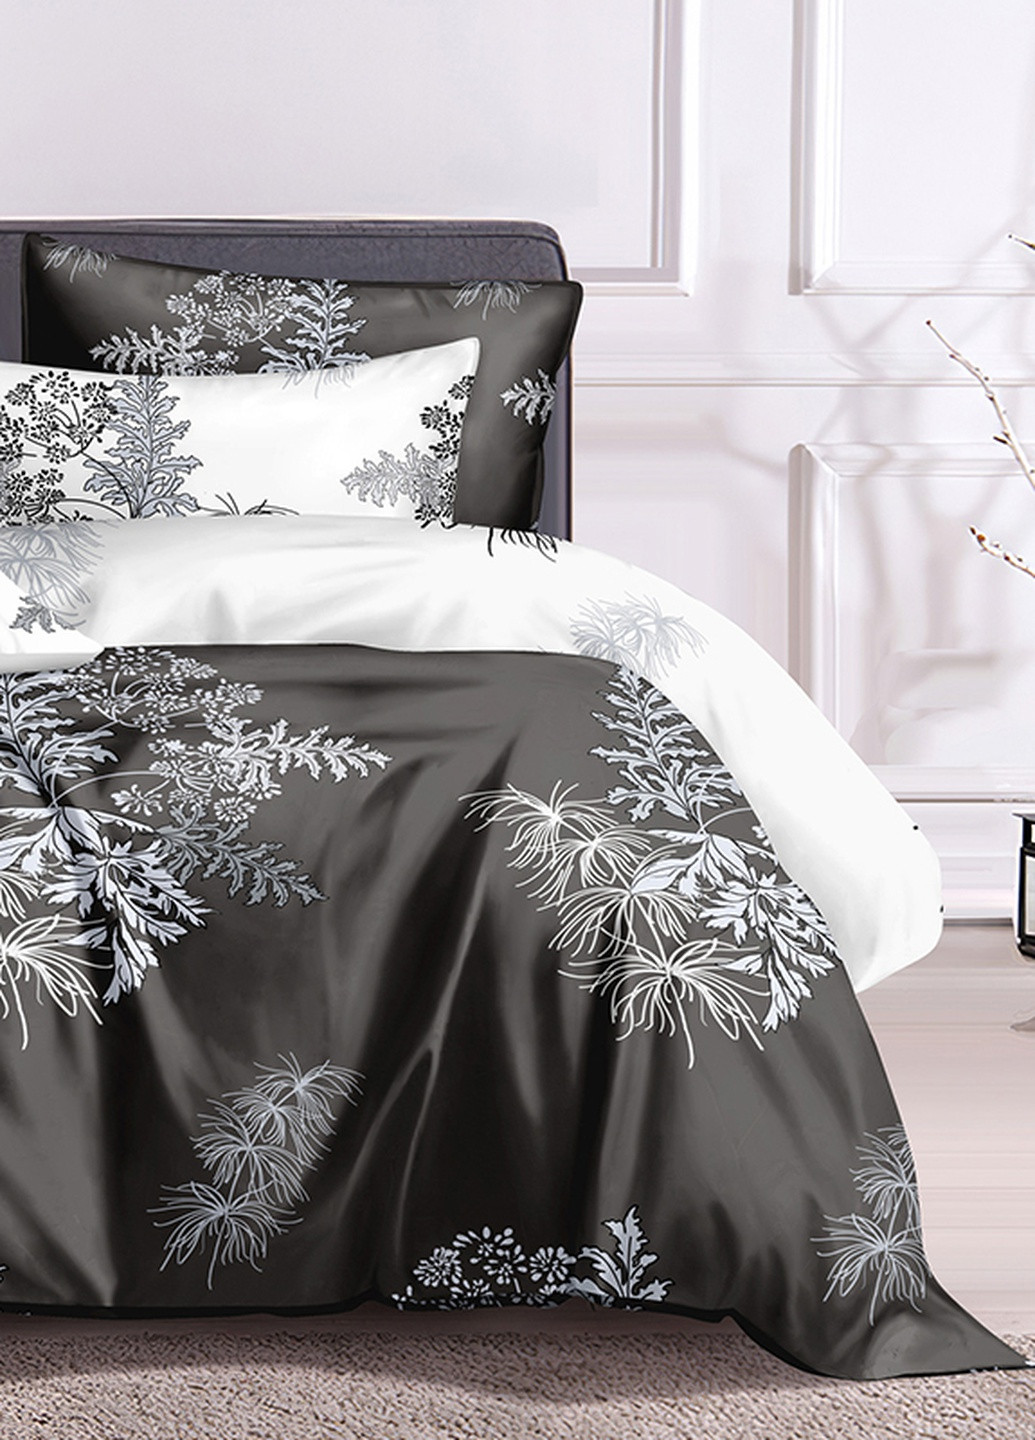 Хлопковое постельное белье White plants с сатиновым плетением Двуспальный комплект SoundSleep (224156385)